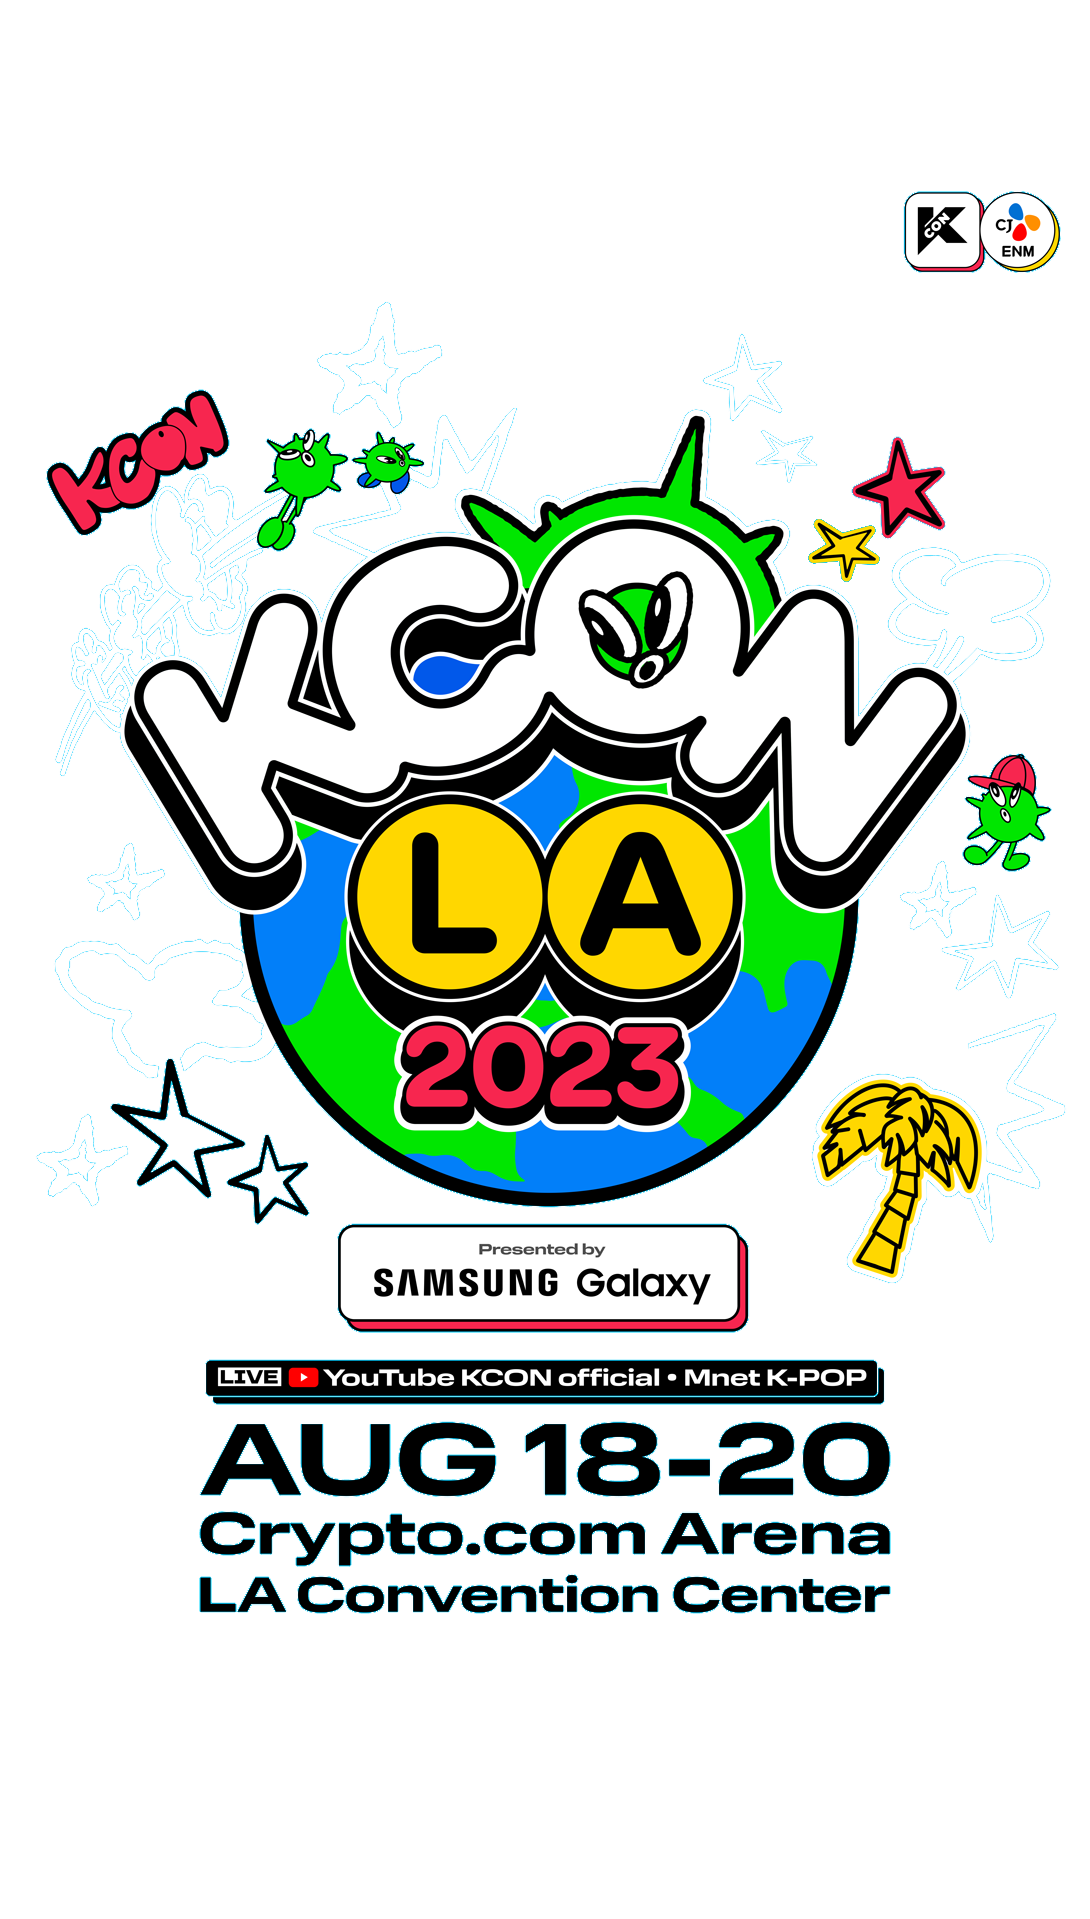 KCON LA 2023 AUG 18-20 Crypto.com Arena - LA Convention Center